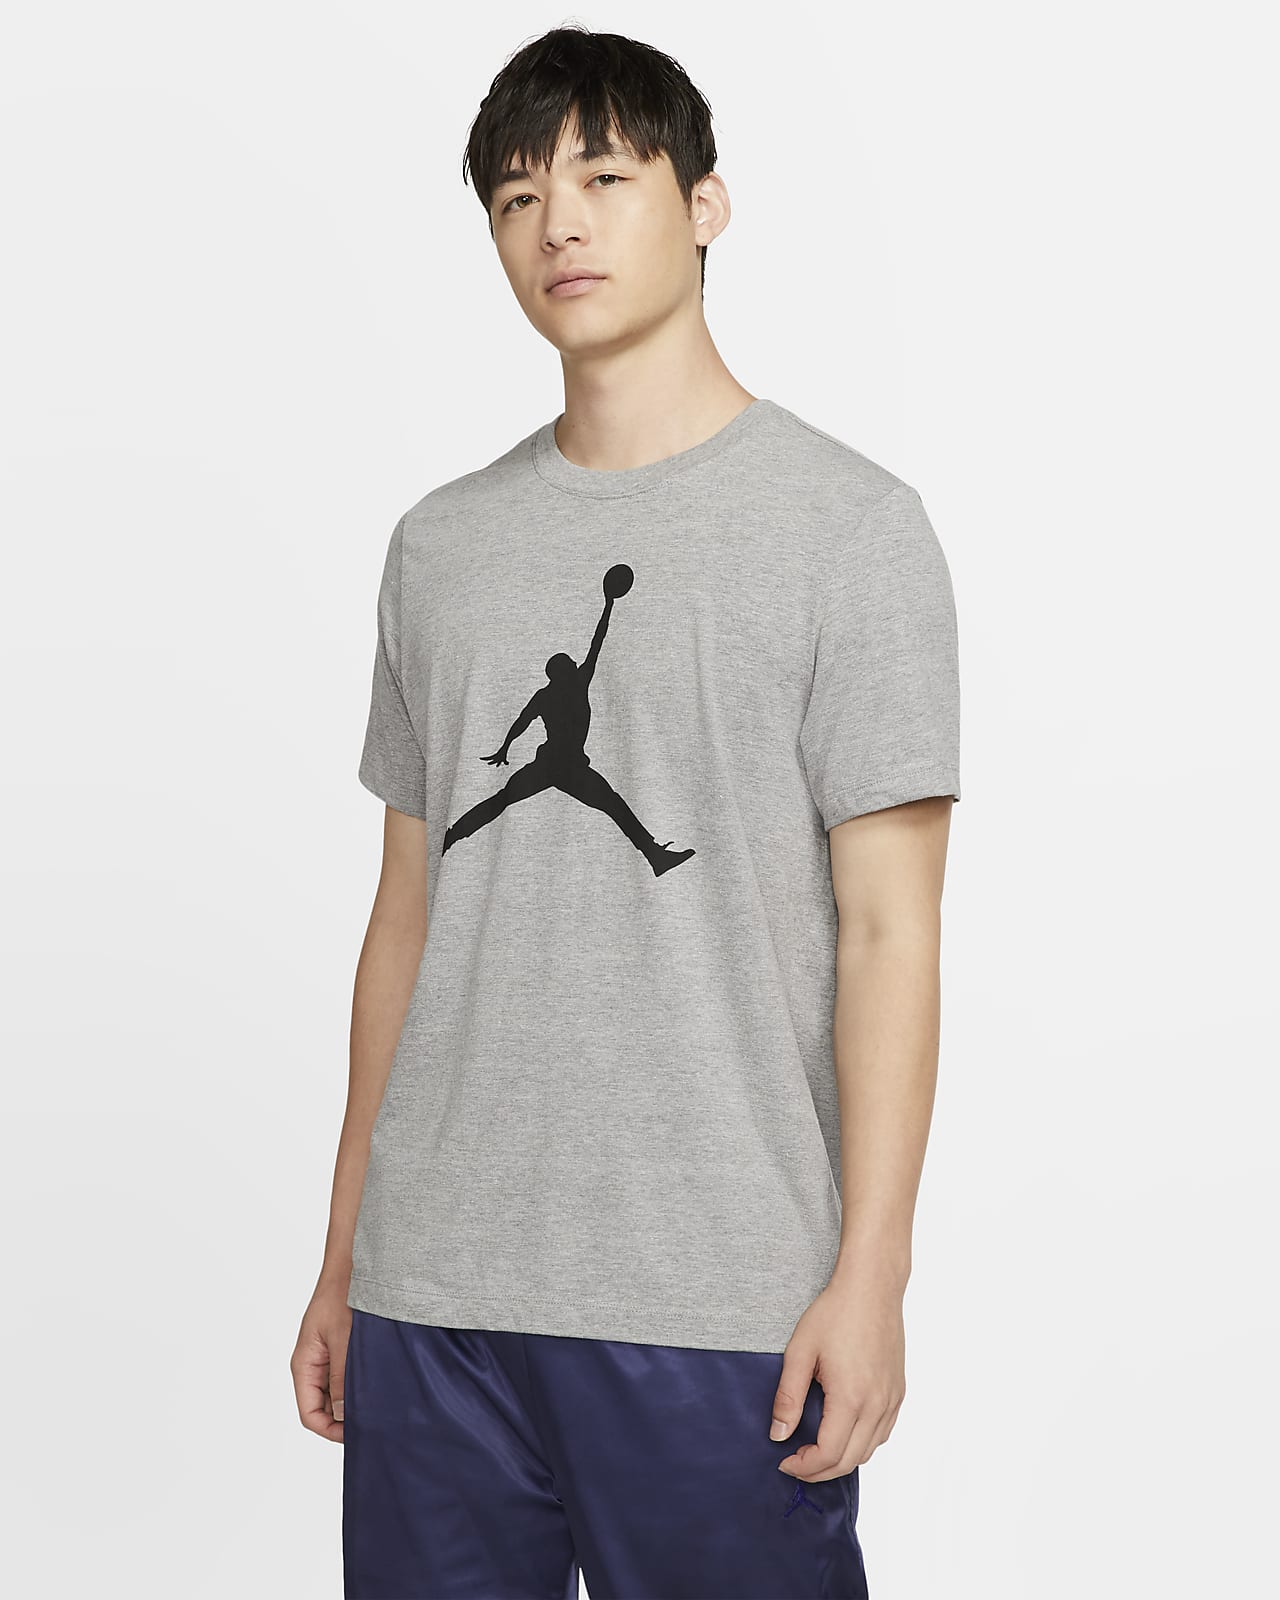 jumpman t shirts sale